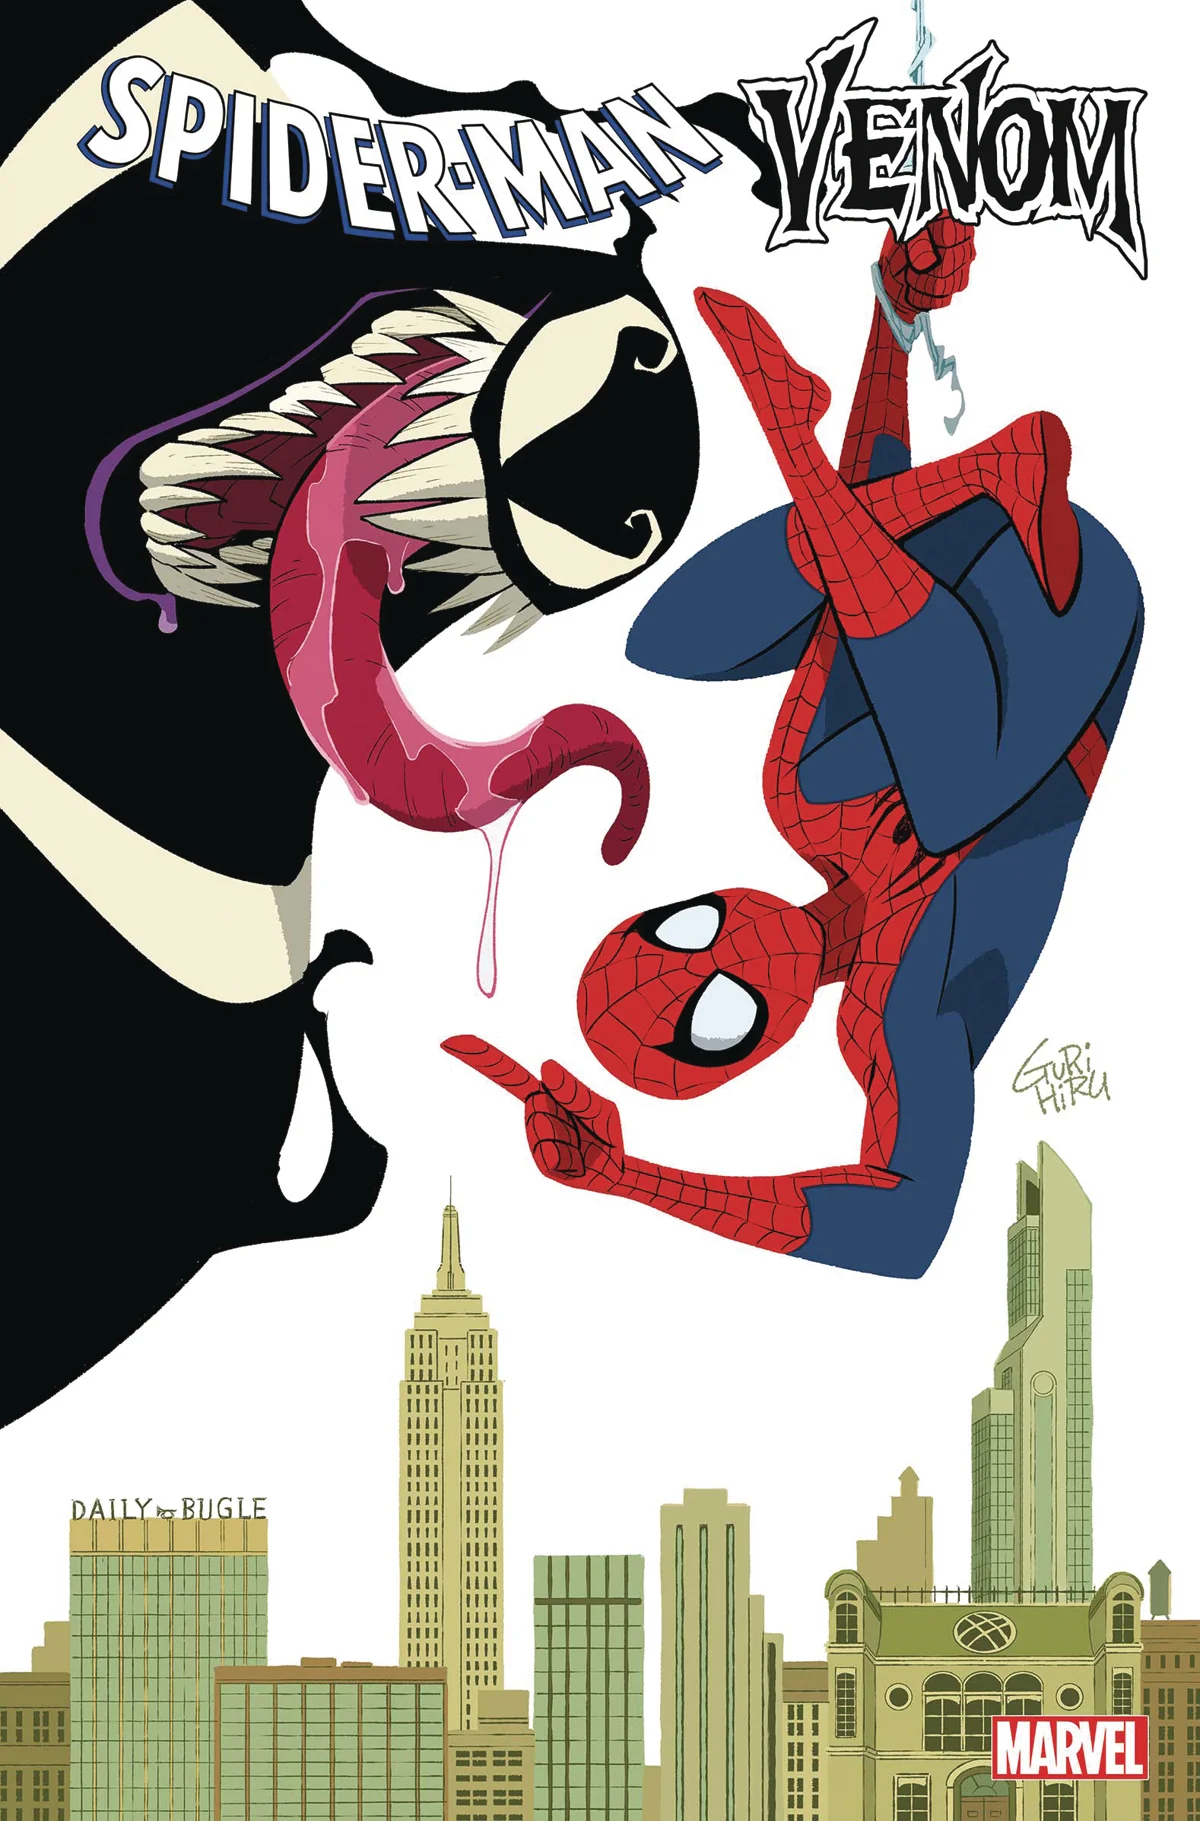 Человек-паук верхом на Веноме на альтернативных обложках к новому комиксу - фото 5